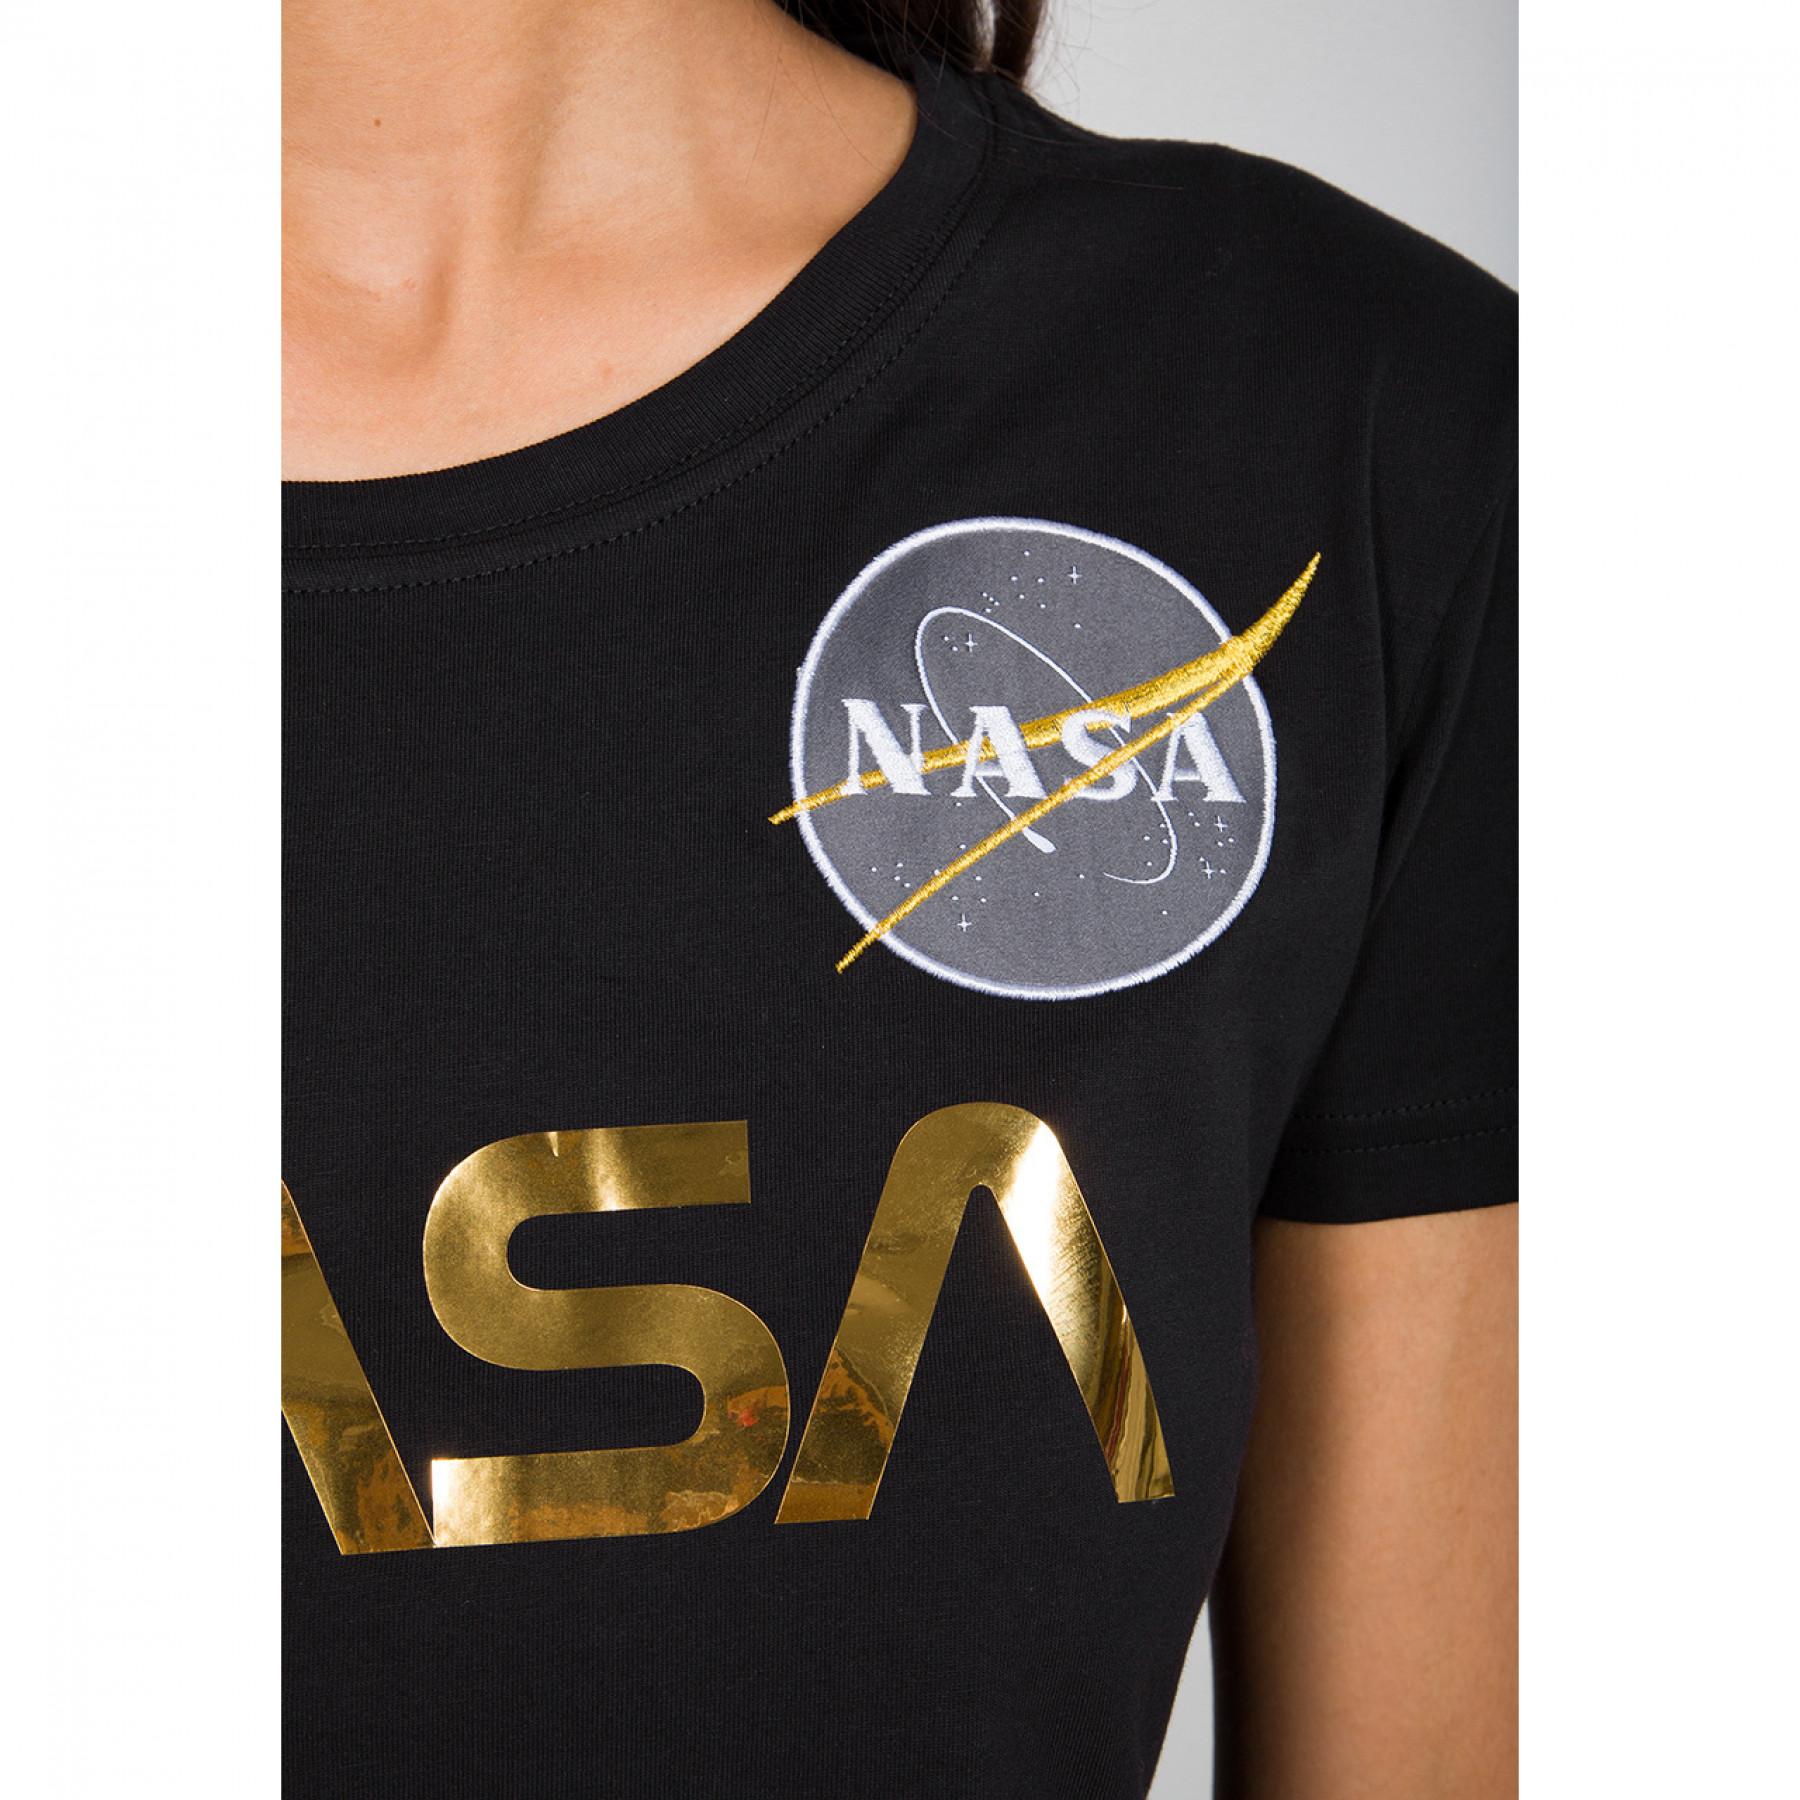 T-shirt för kvinnor Alpha Industries NASA PM